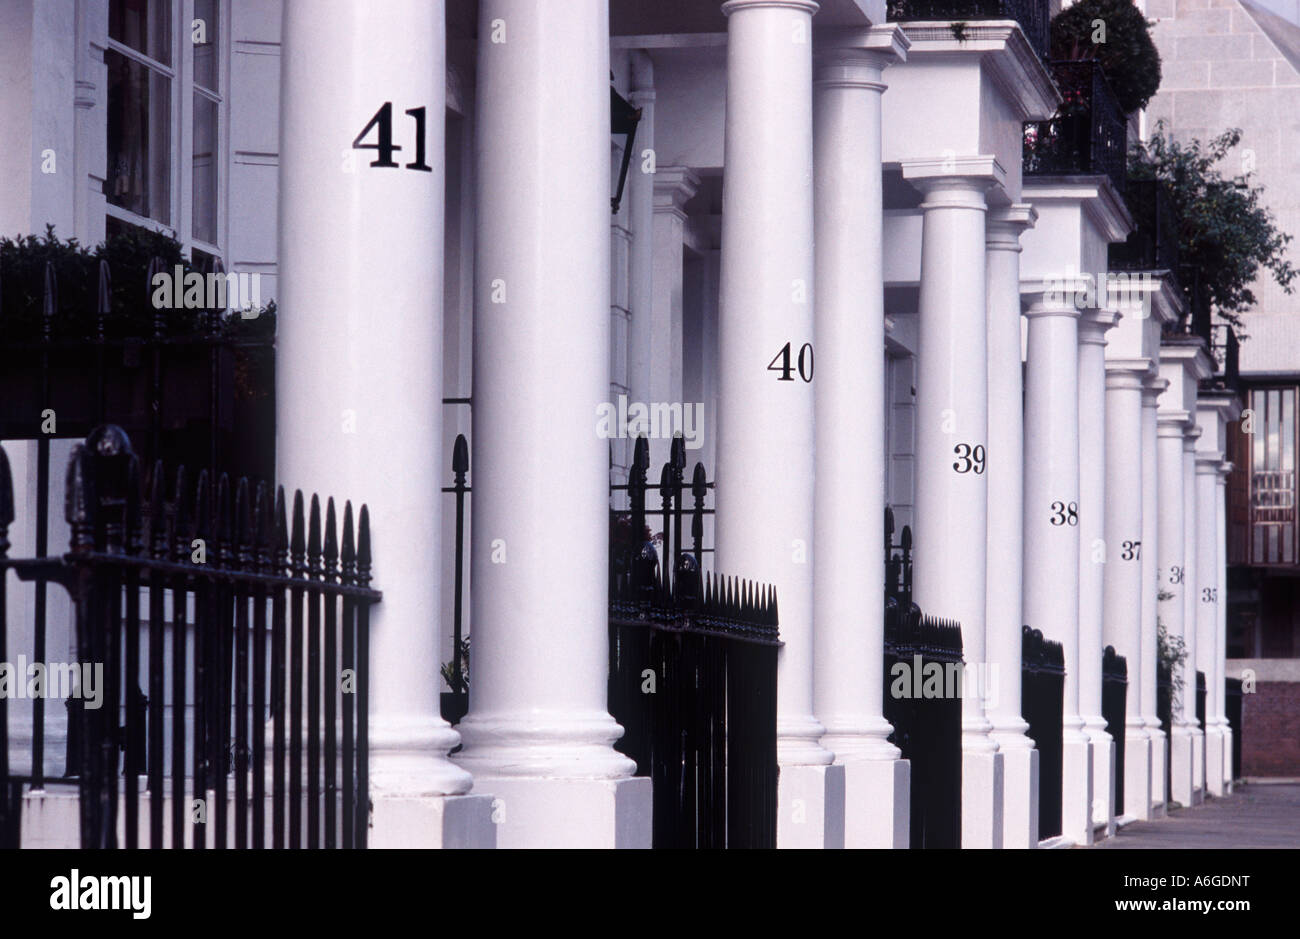 Les numéros d'adresse rue noire sur la ligne de colonnes blanches avant de Regency Square Thurloe, maisons, South Kensington, London SW7 Angleterre Banque D'Images